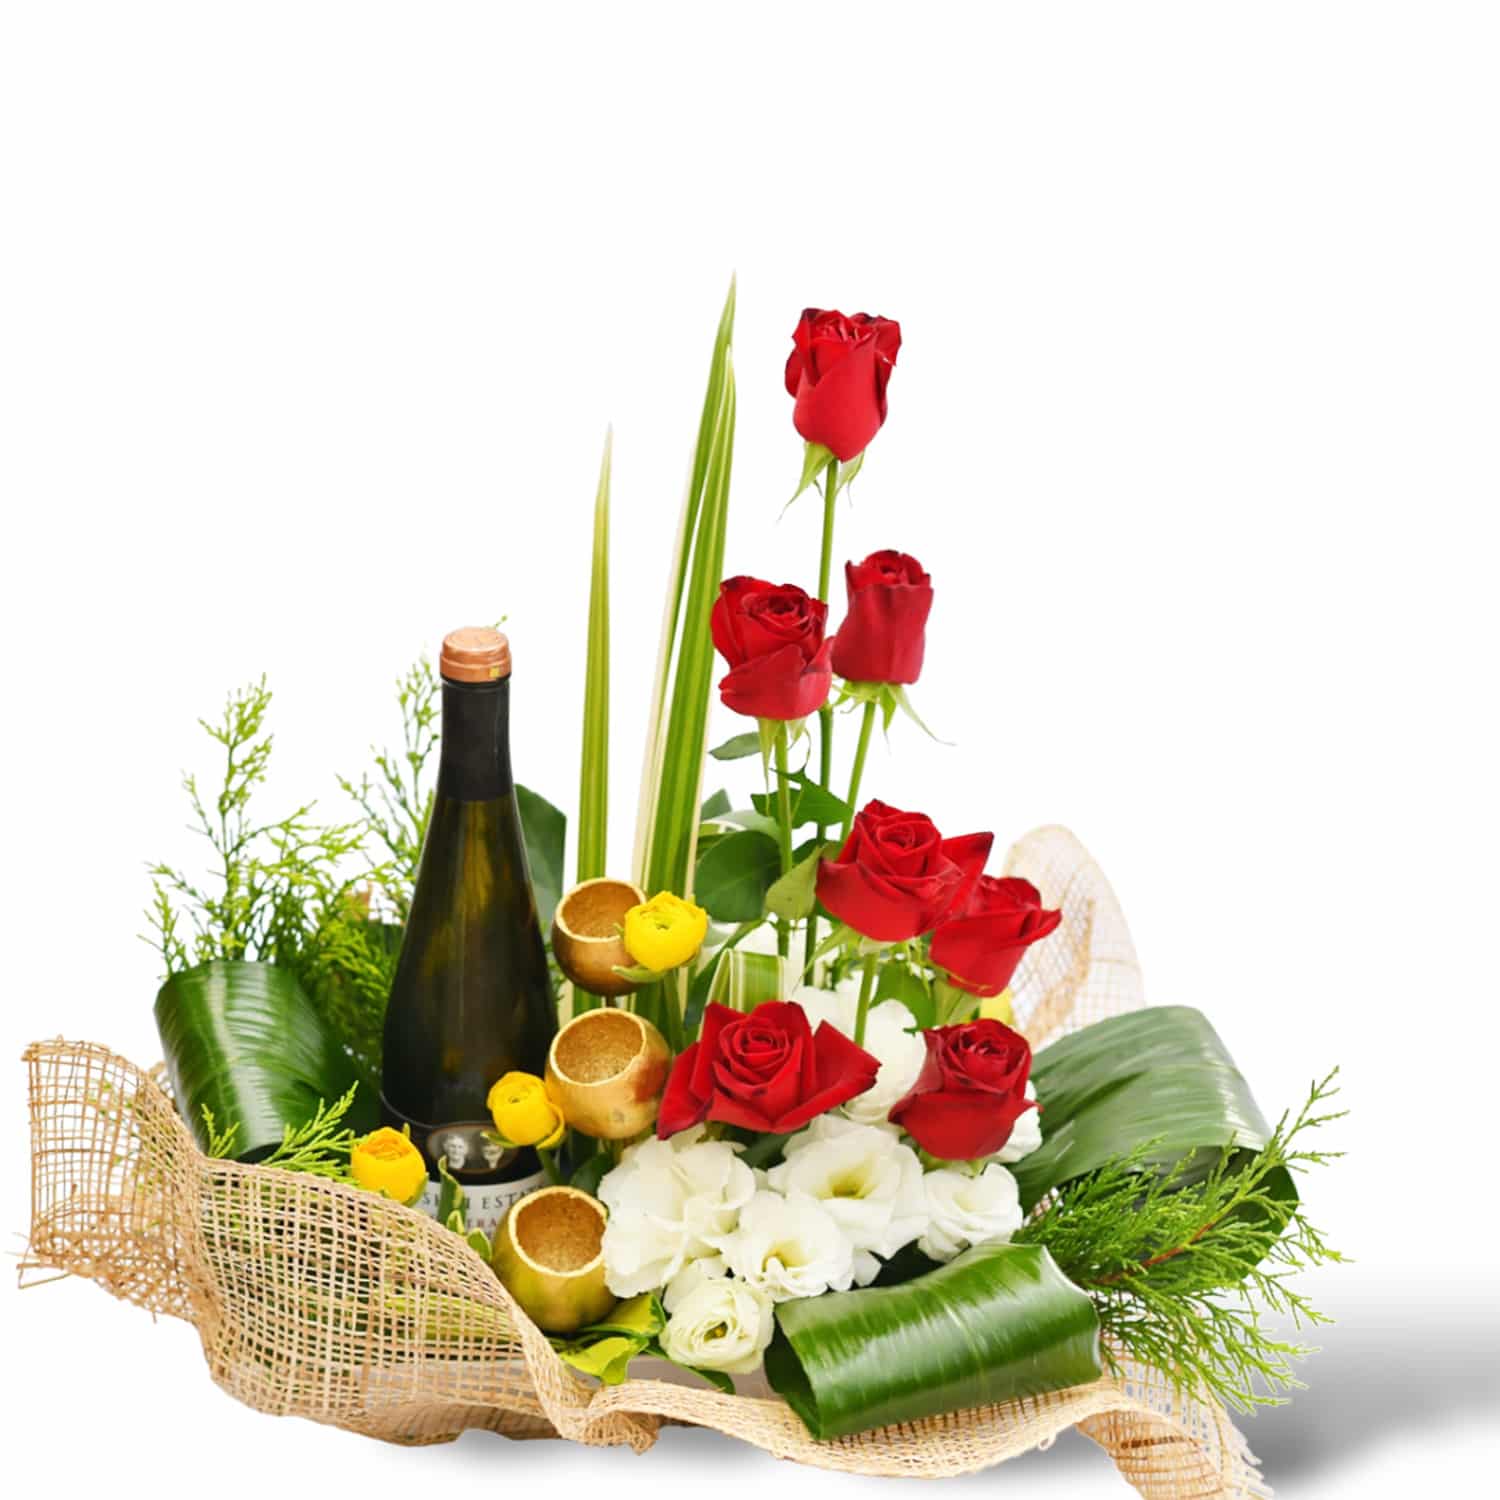 משלוח פרחים בראשון לציון - הסחלב: חנות פרחים לכל אירוע - סידור קלאסי יוקרתי & יין שרדונה